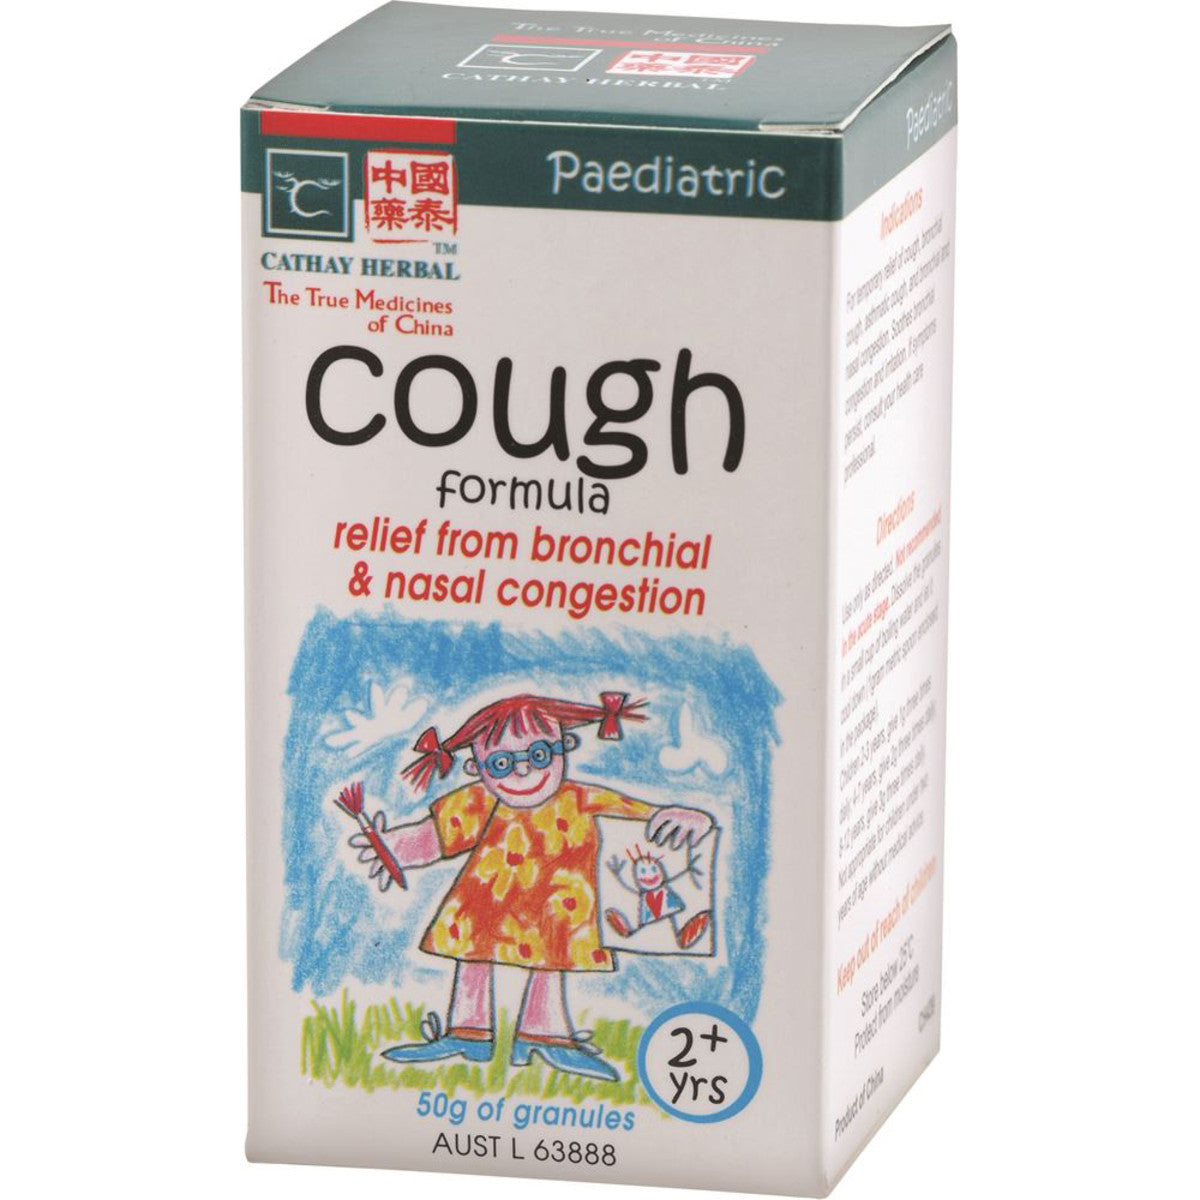 Cathay Herbal - Paediatric Cough Formula